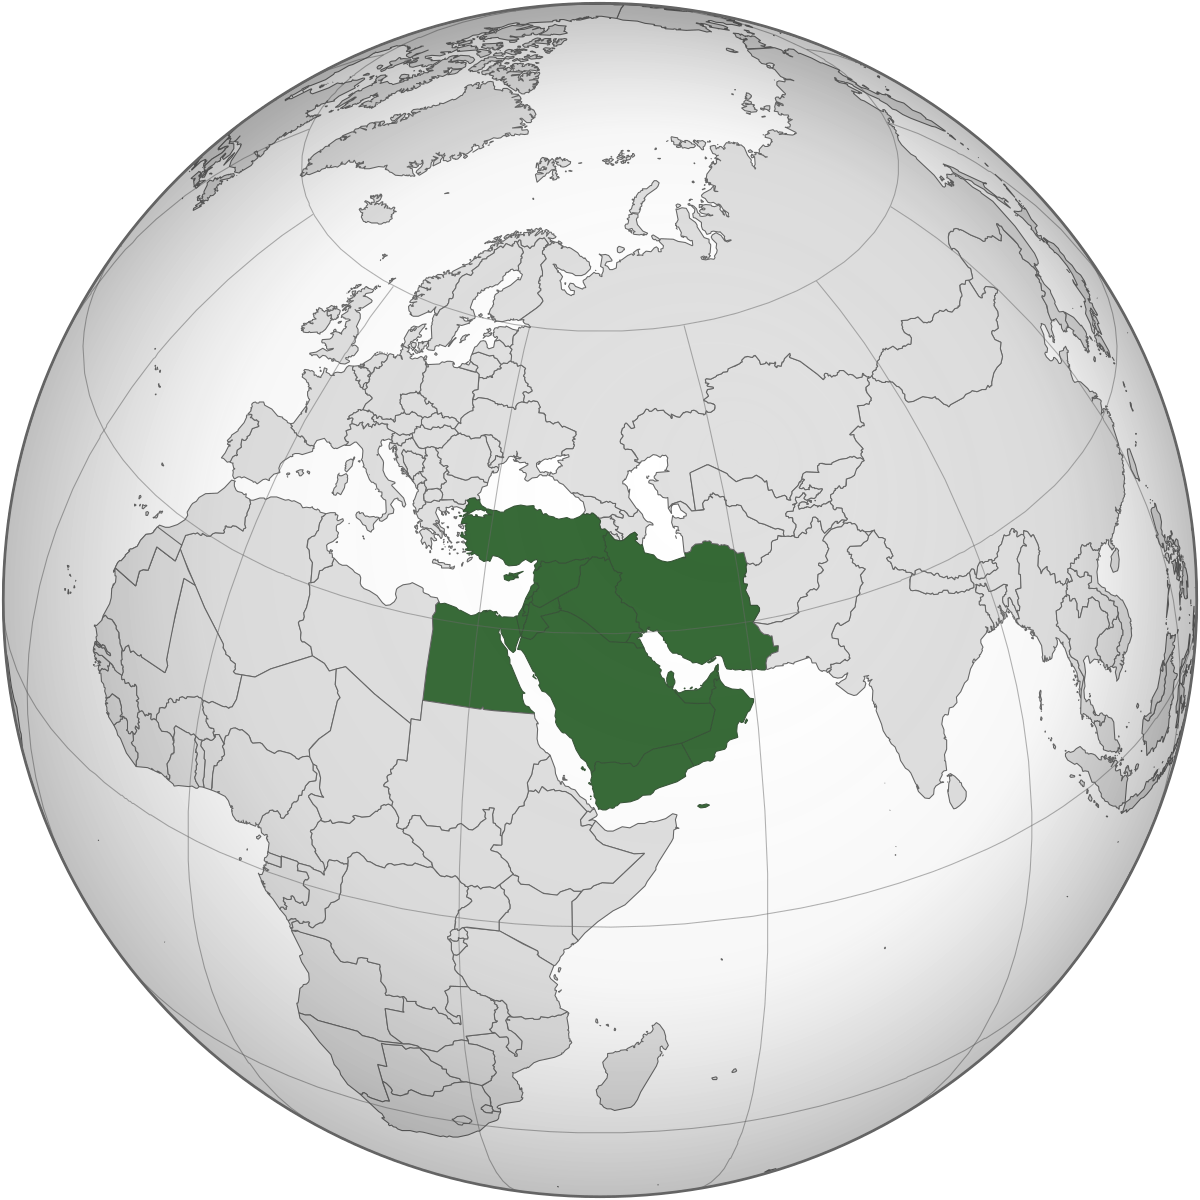 التوترات في الشرق الأوسط ومستقبل حوكمة الأمن الإقليمي